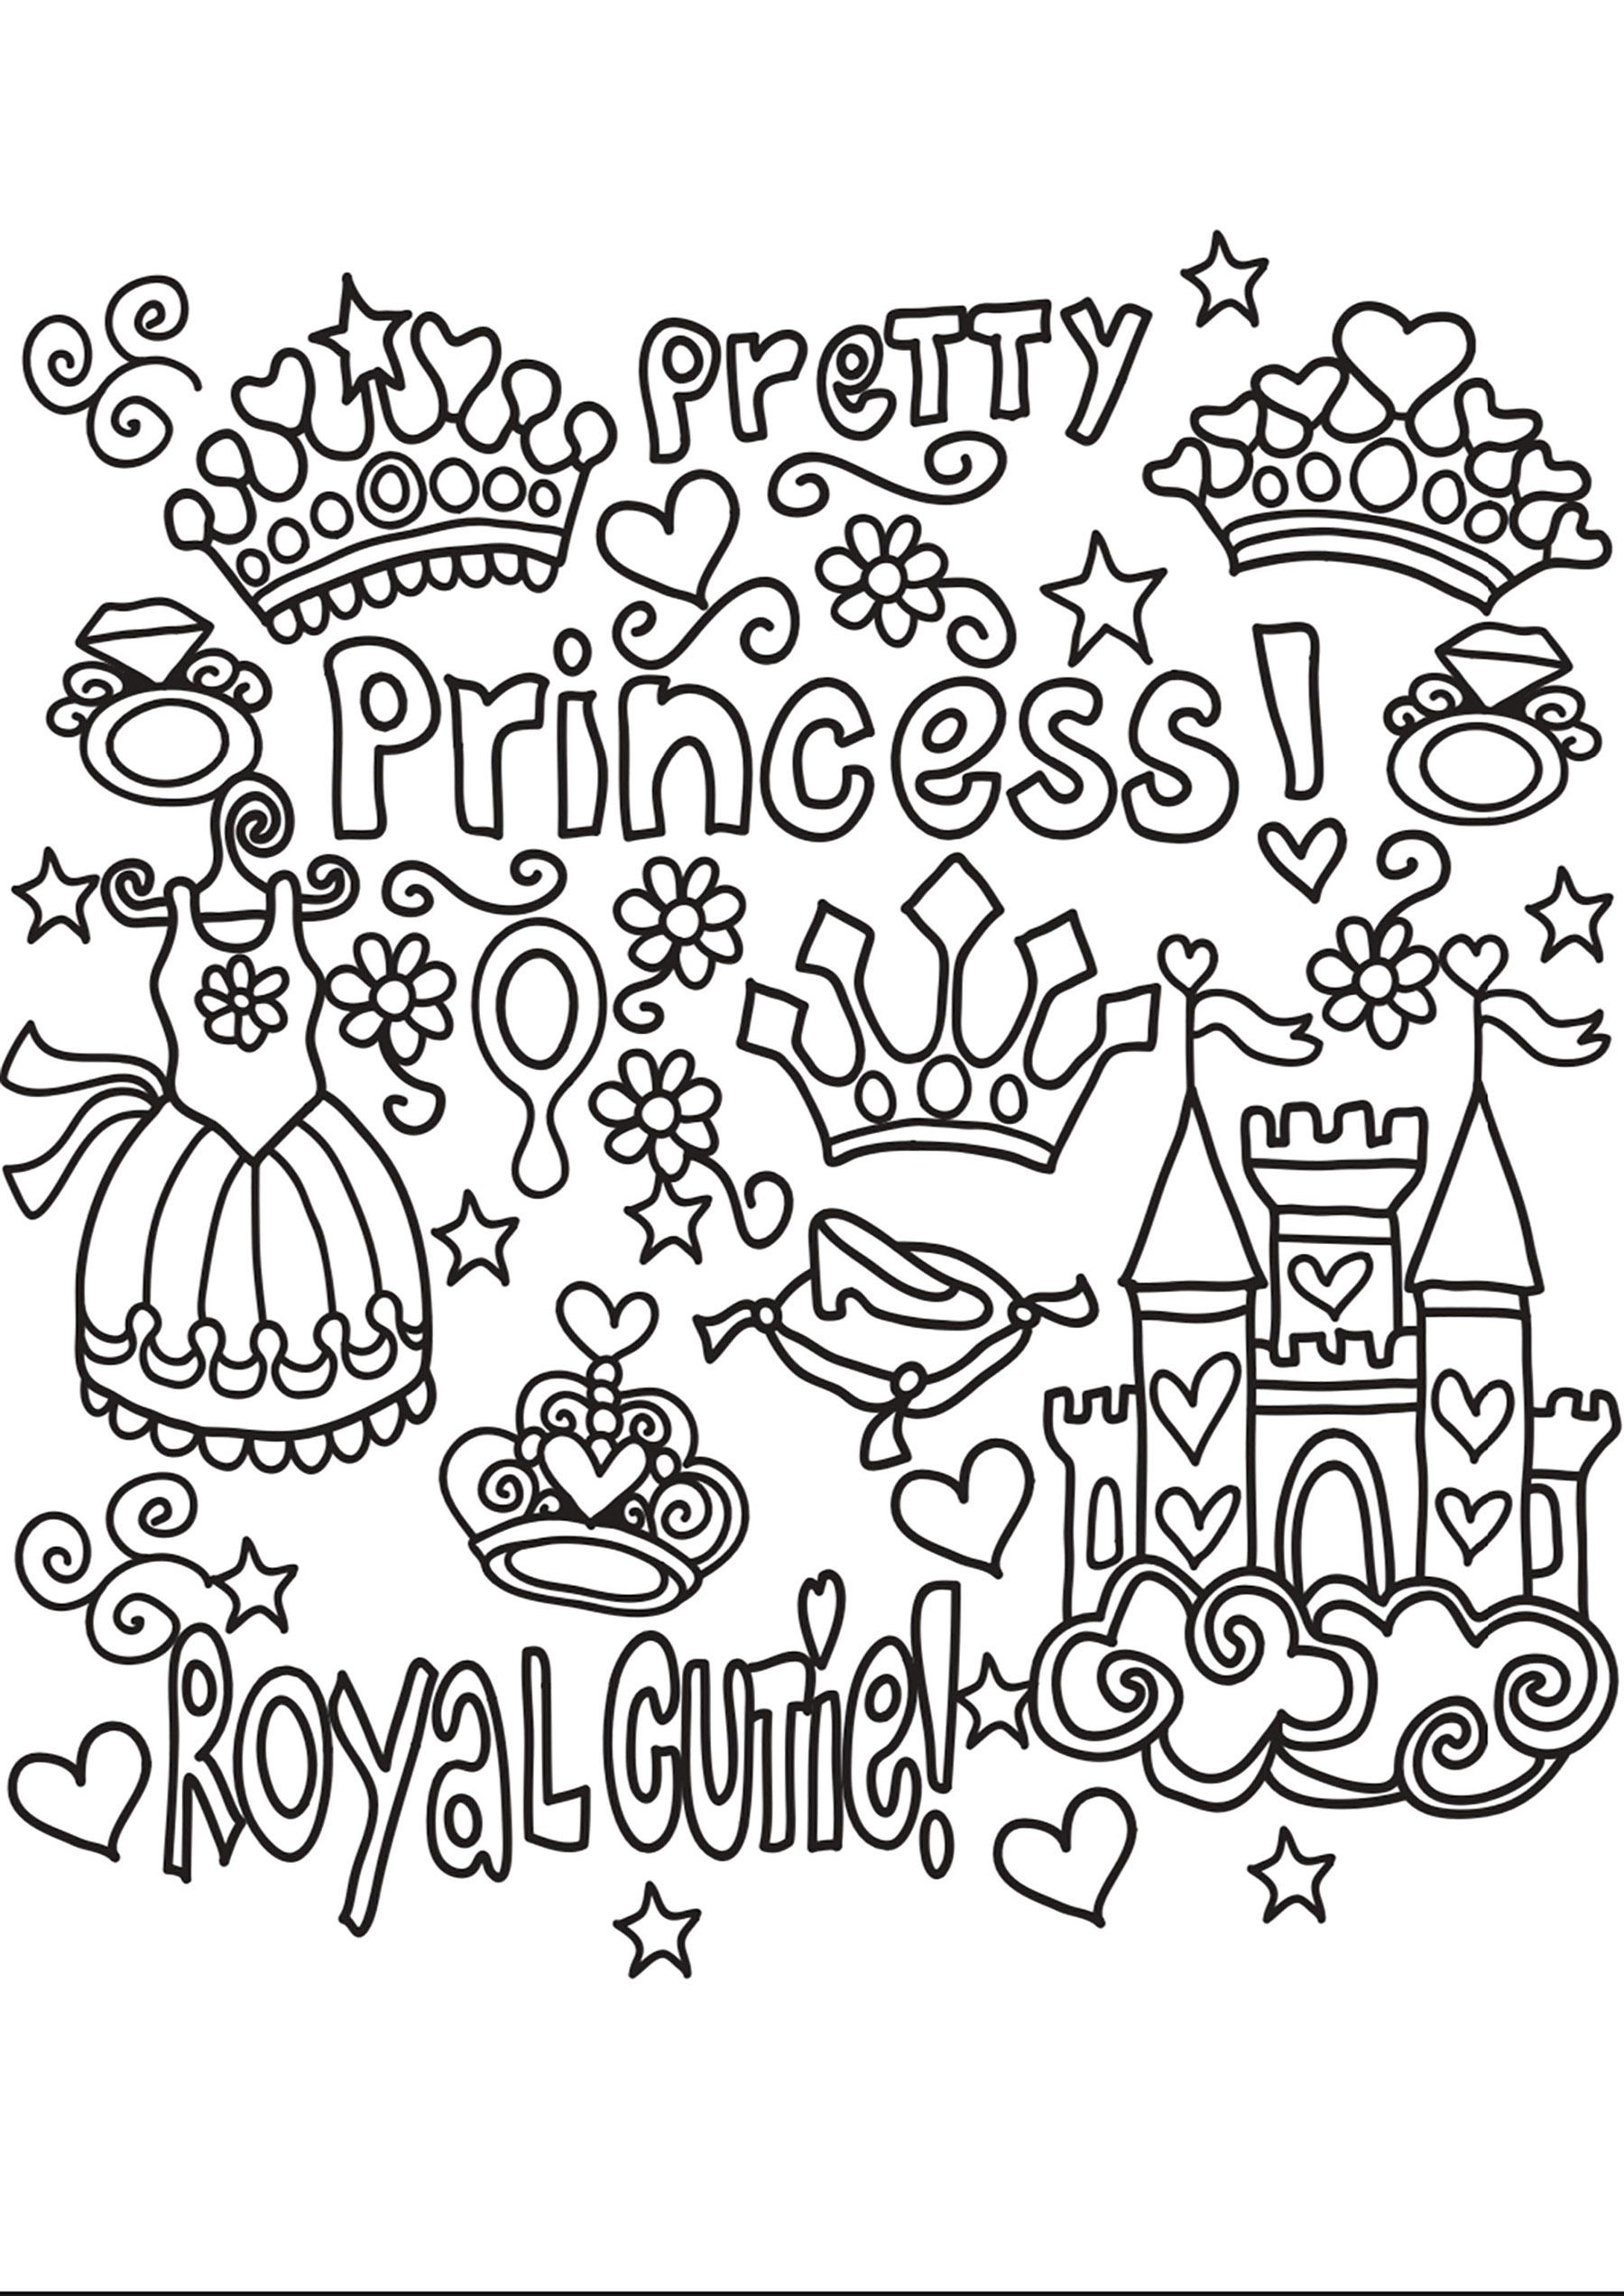 Princesa Garabato. Numerosos objetos y textos relativos a las Princesas: castillo, vestido, corona, etc.